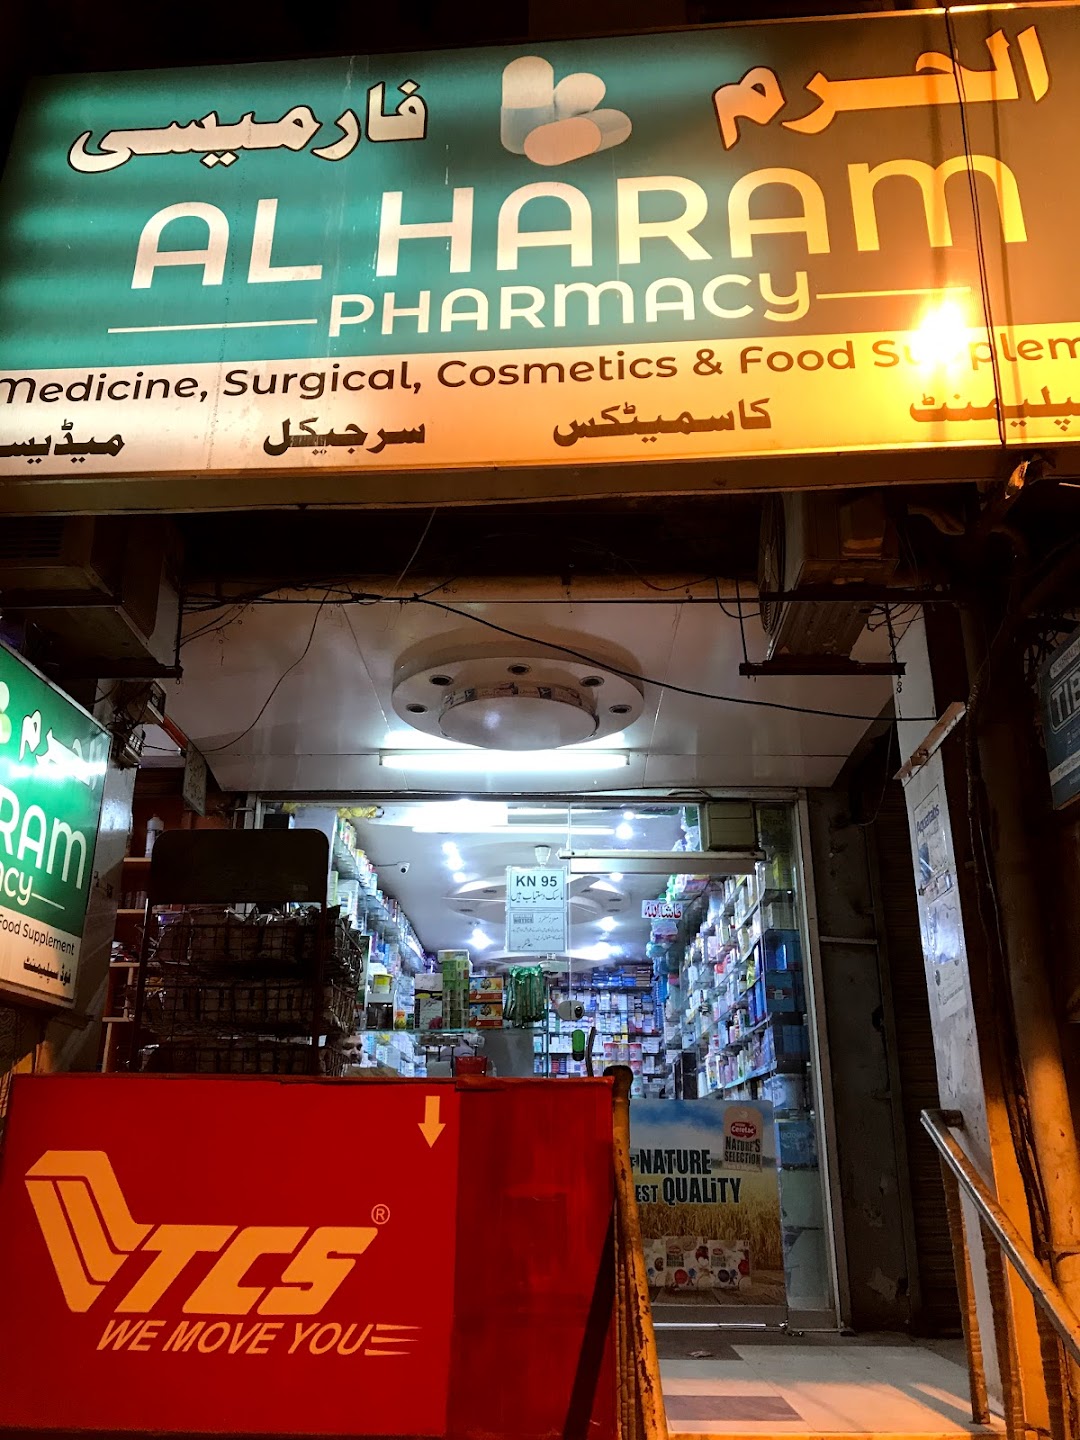 AlHaram Pharmacy, I-10 Markaz